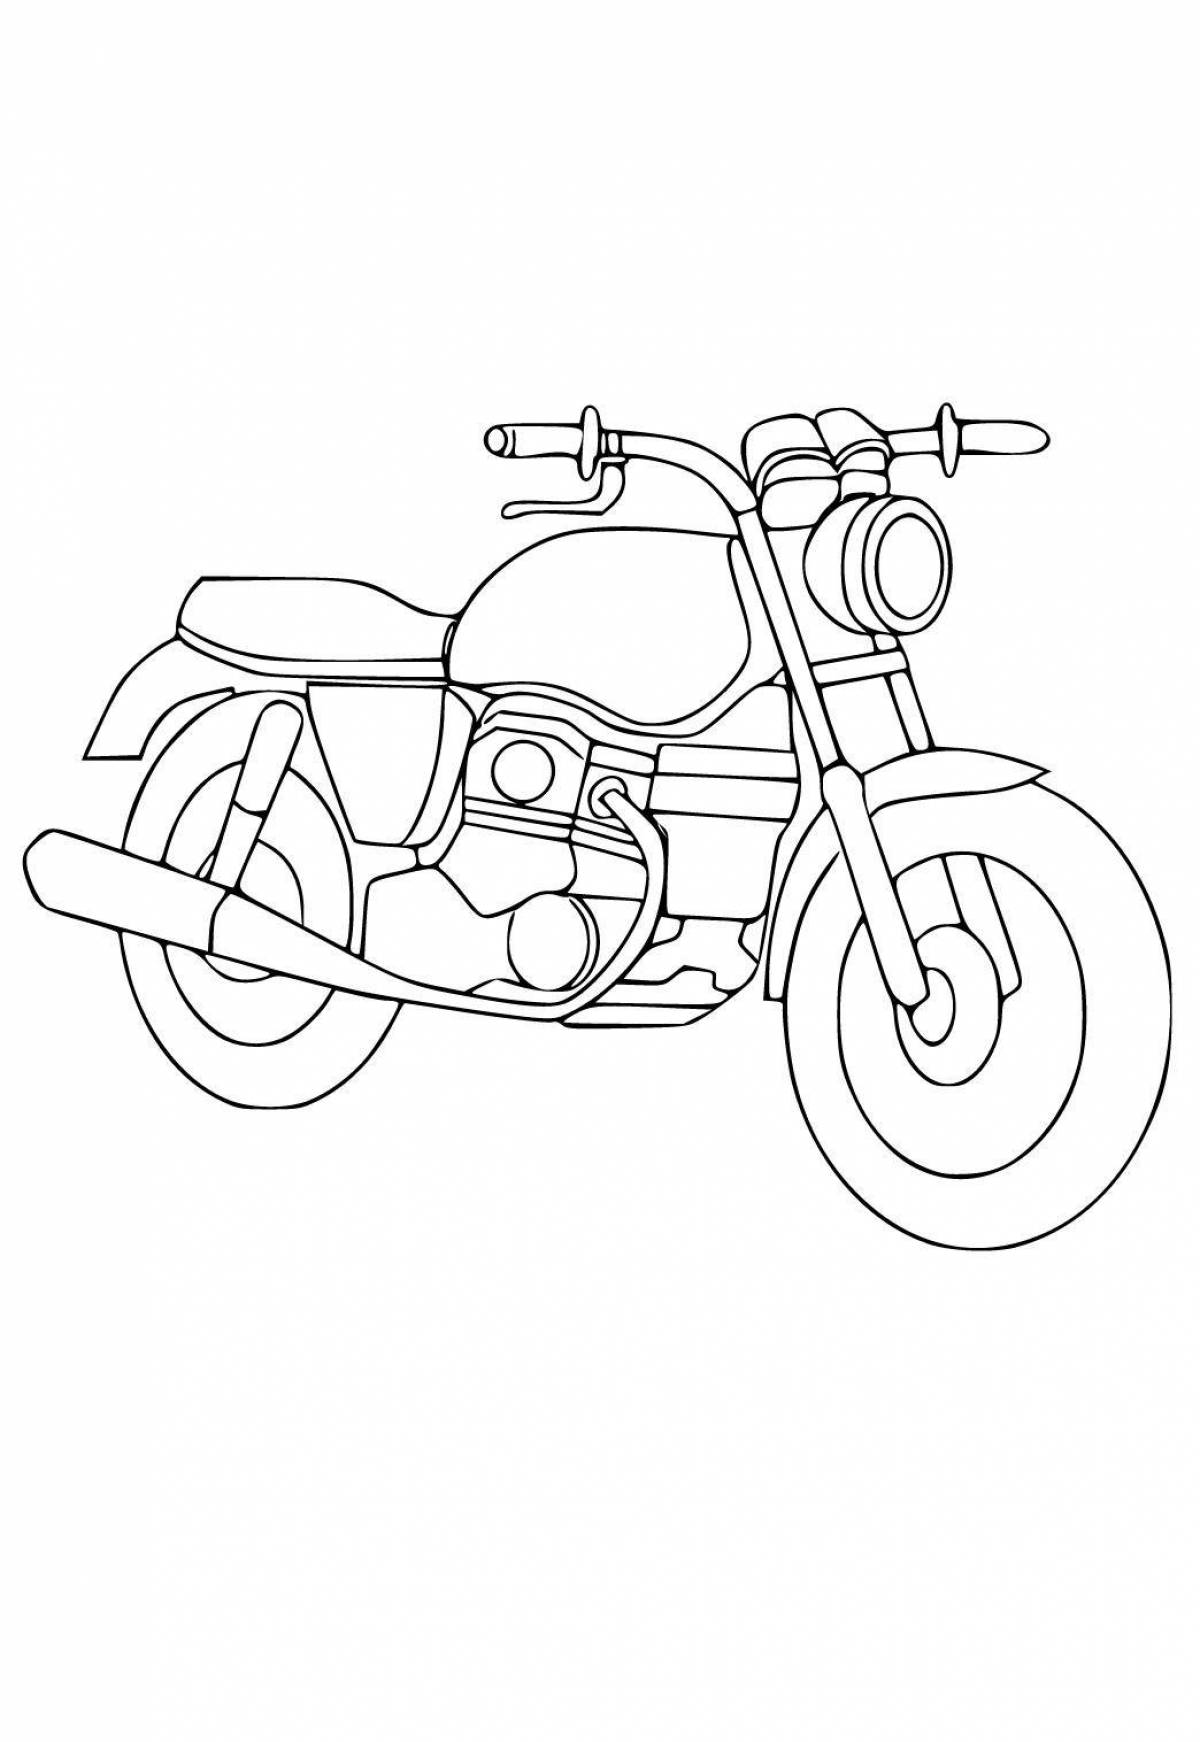 Сказочная раскраска мотоциклов для детей 3-4 лет